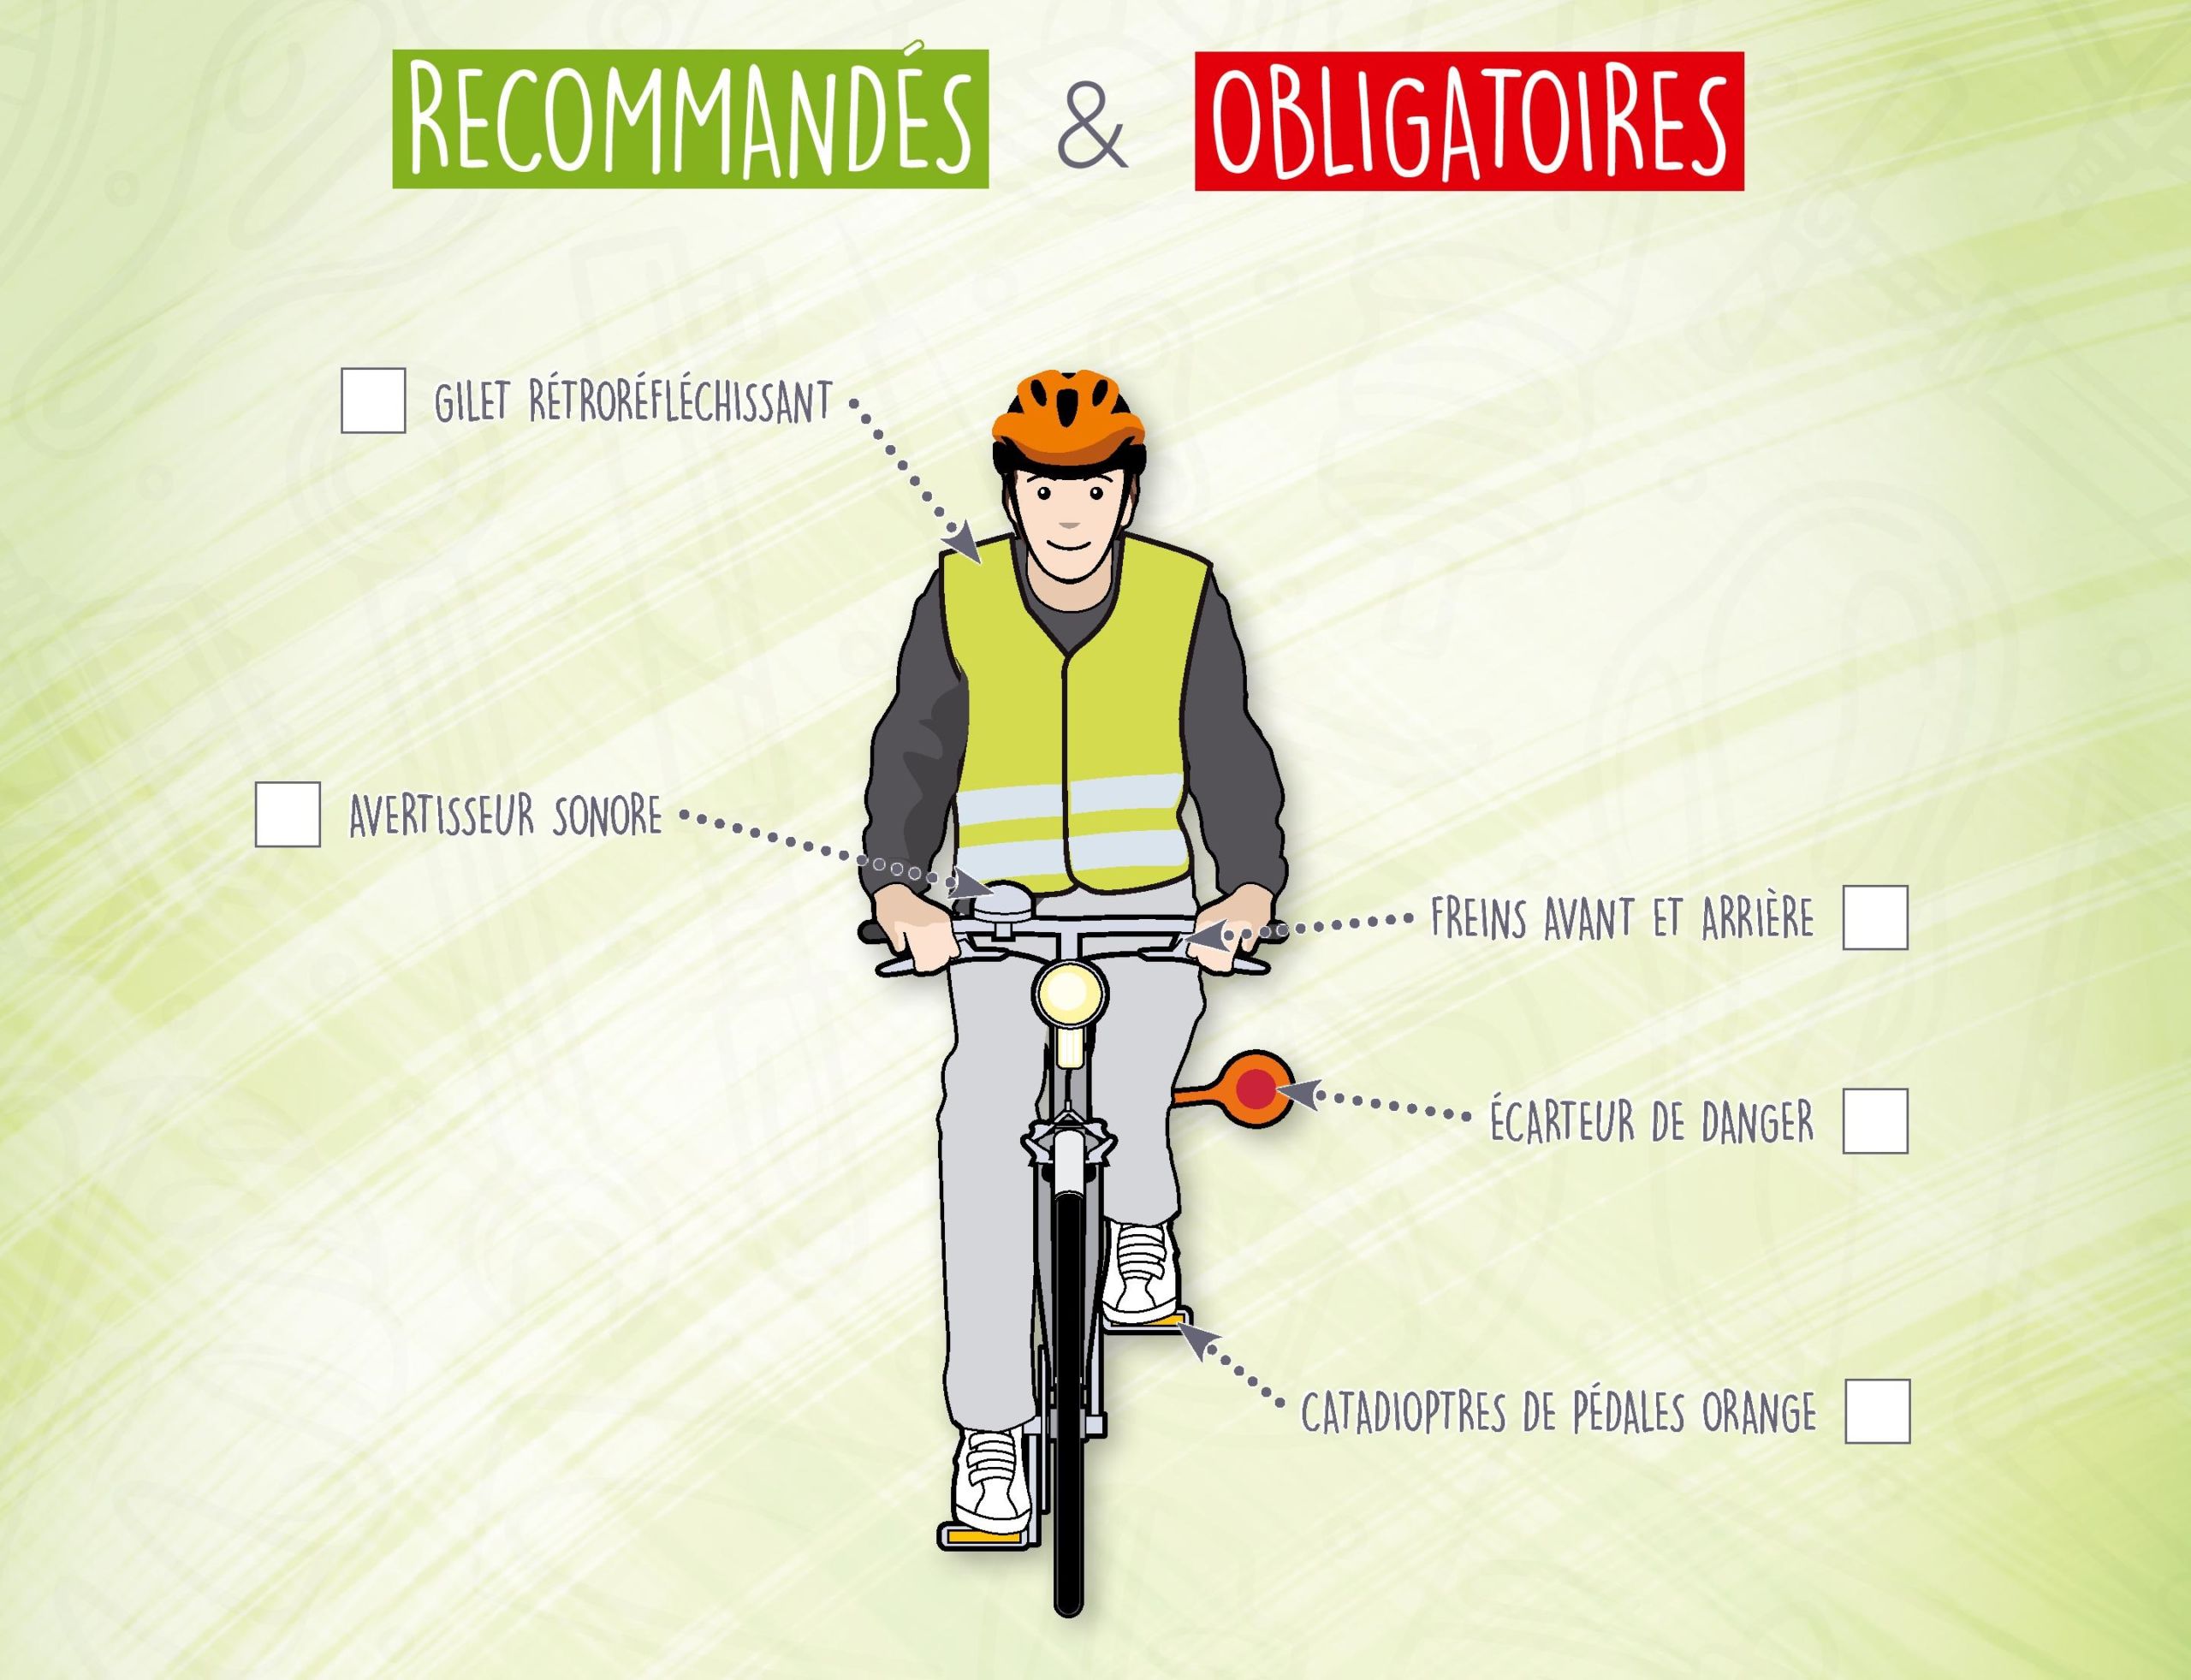 Équiper son vélo : les équipements obligatoires - Fondation de la route